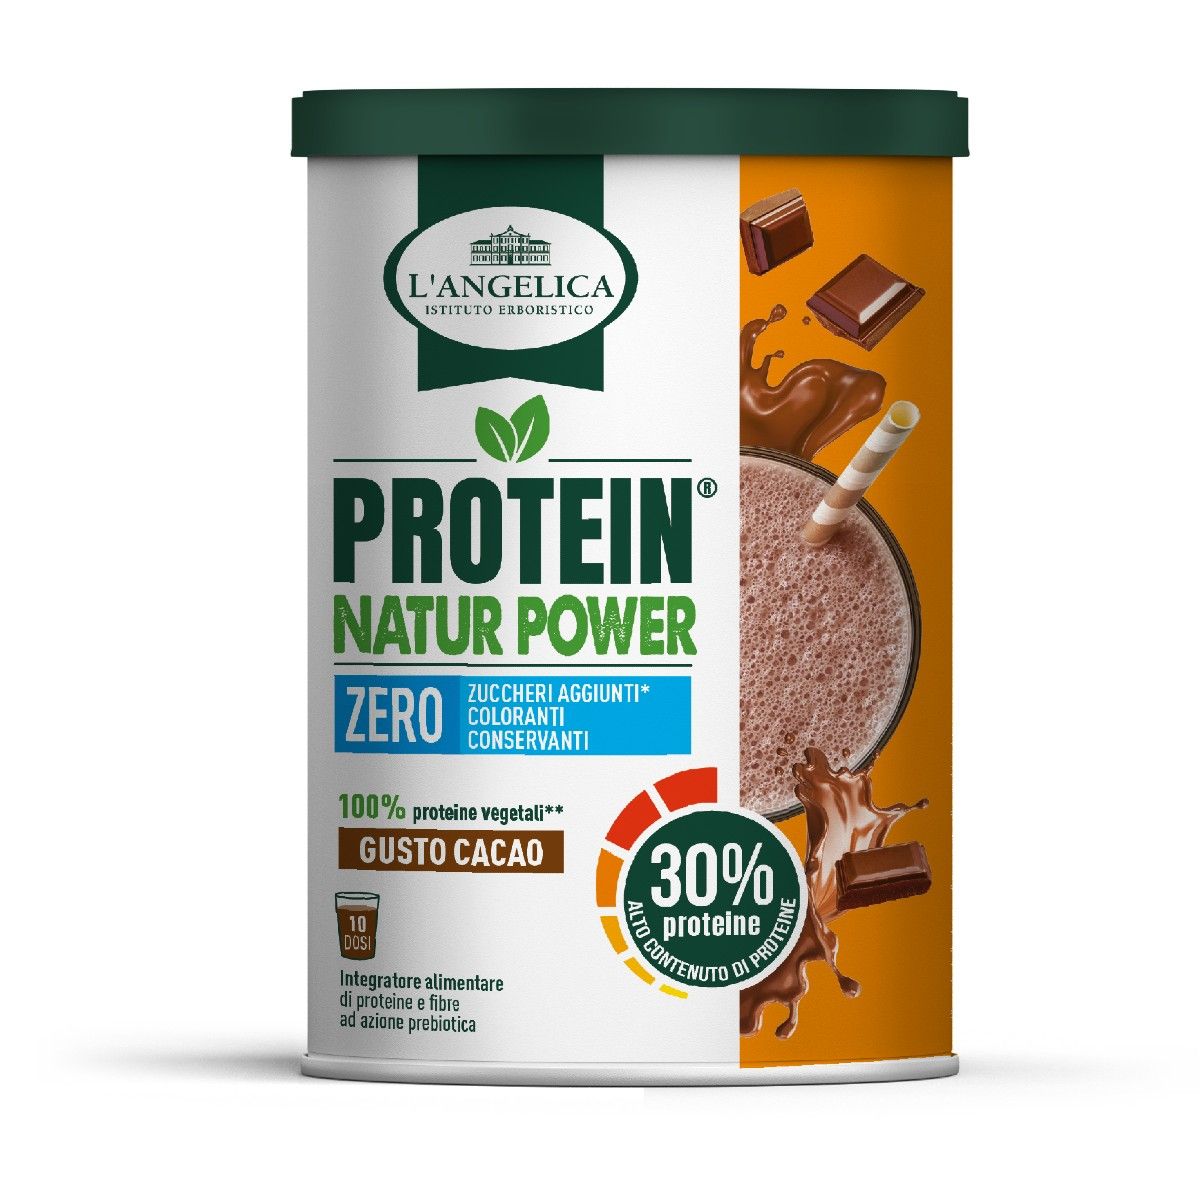 Protein Powder 30% - Cocoa Flavour